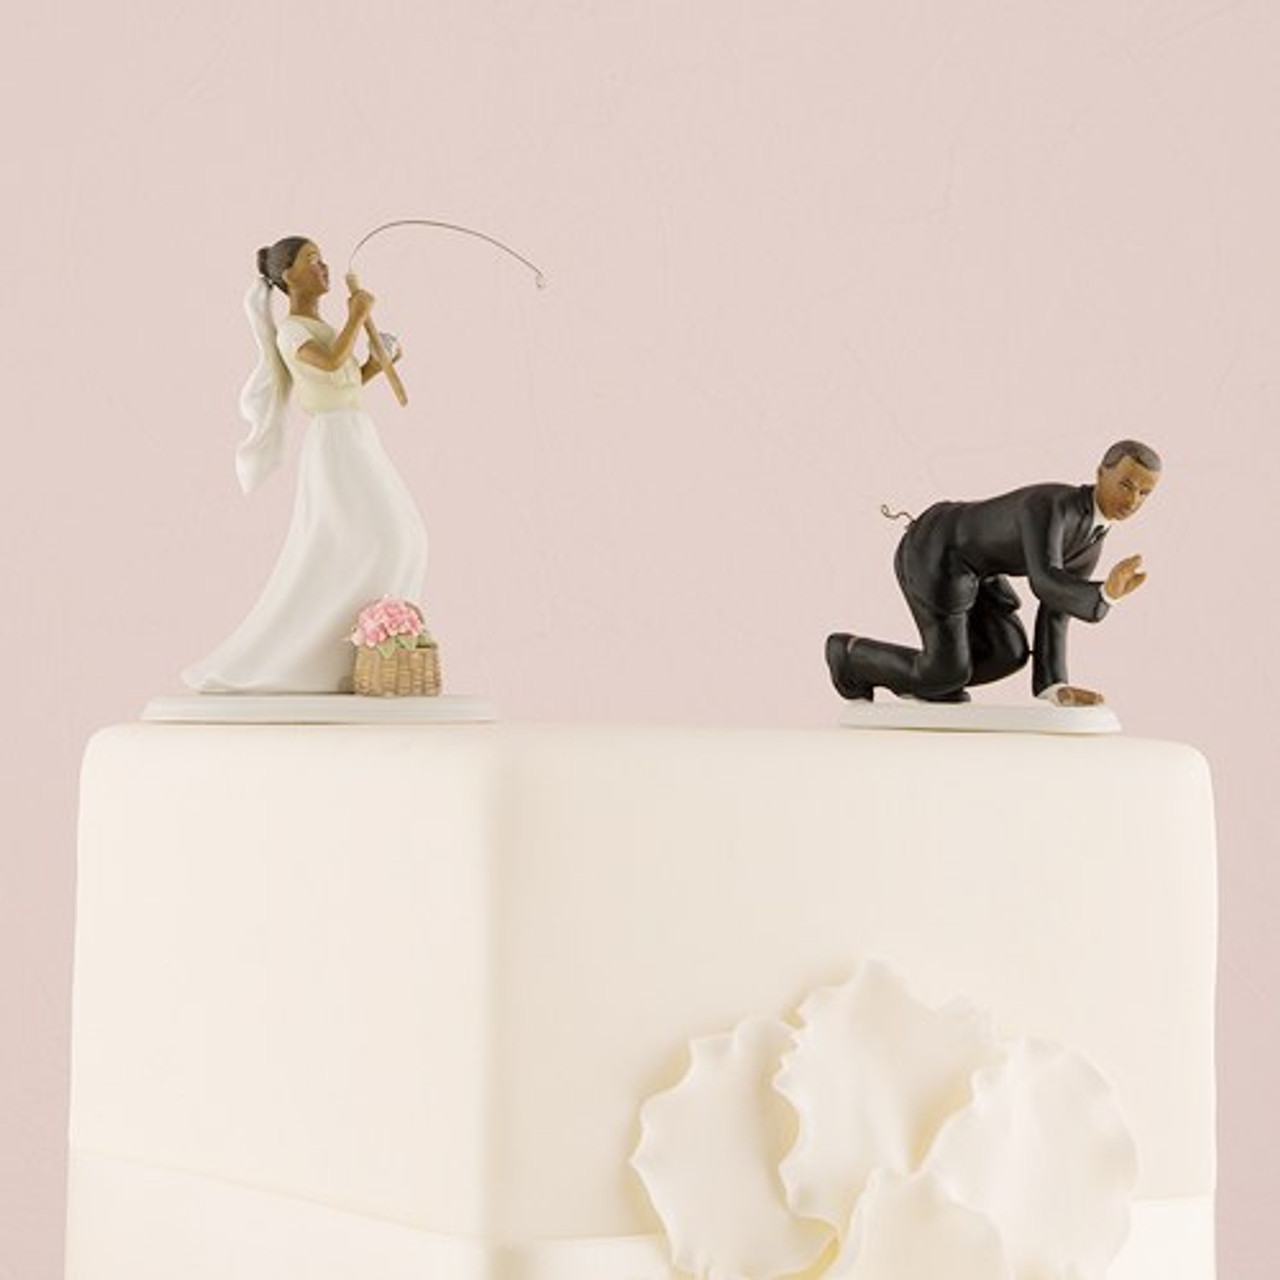 Fishing Cake Topper - Funny Wedding Cake Topper - For Love